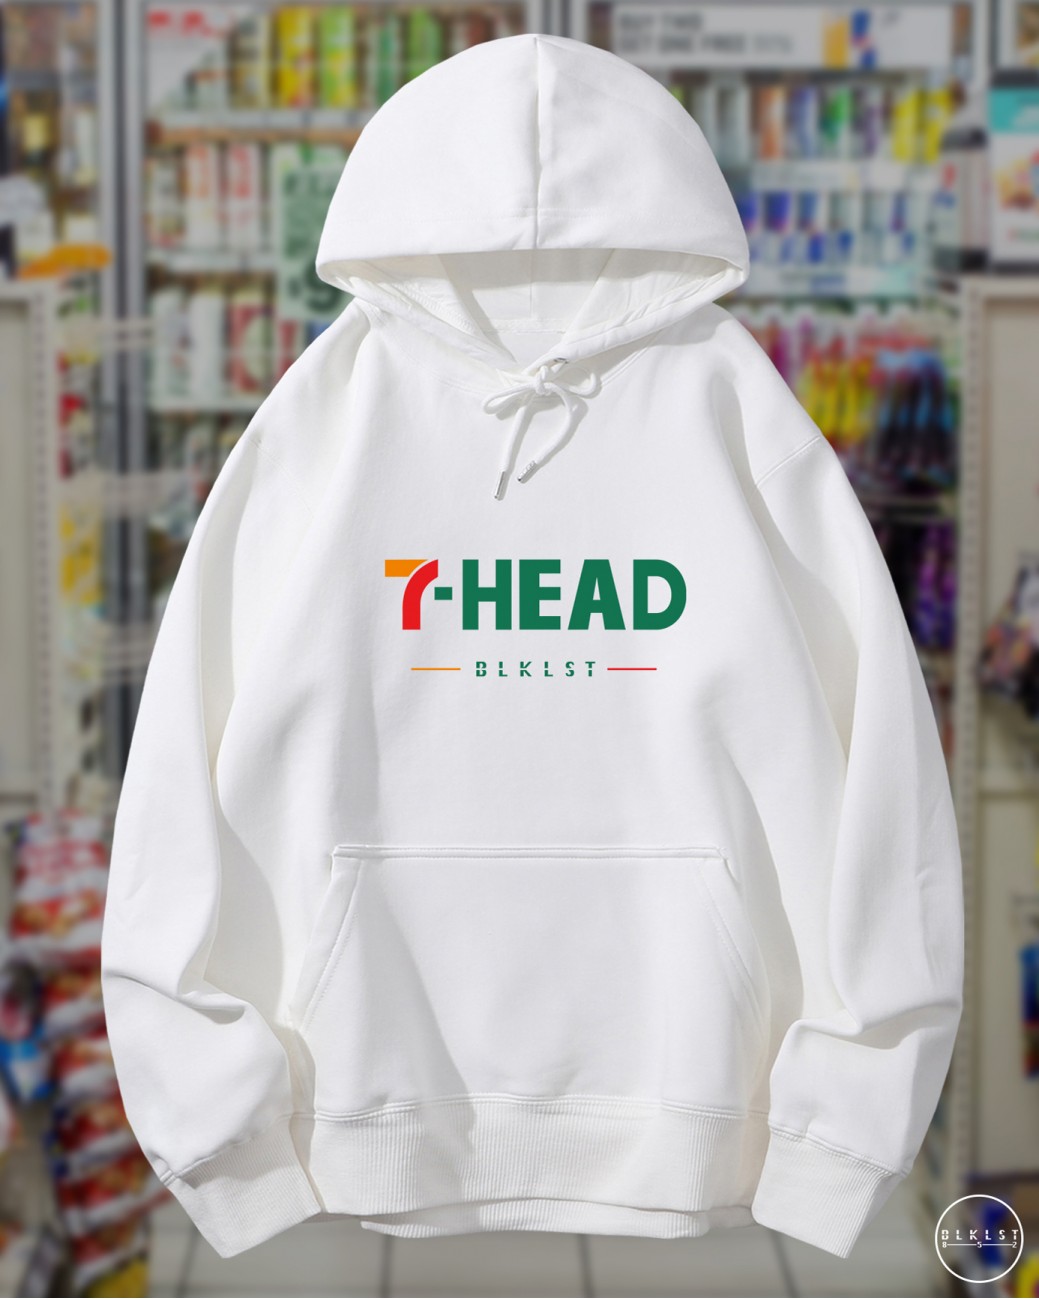 7-HEAD HOODIE